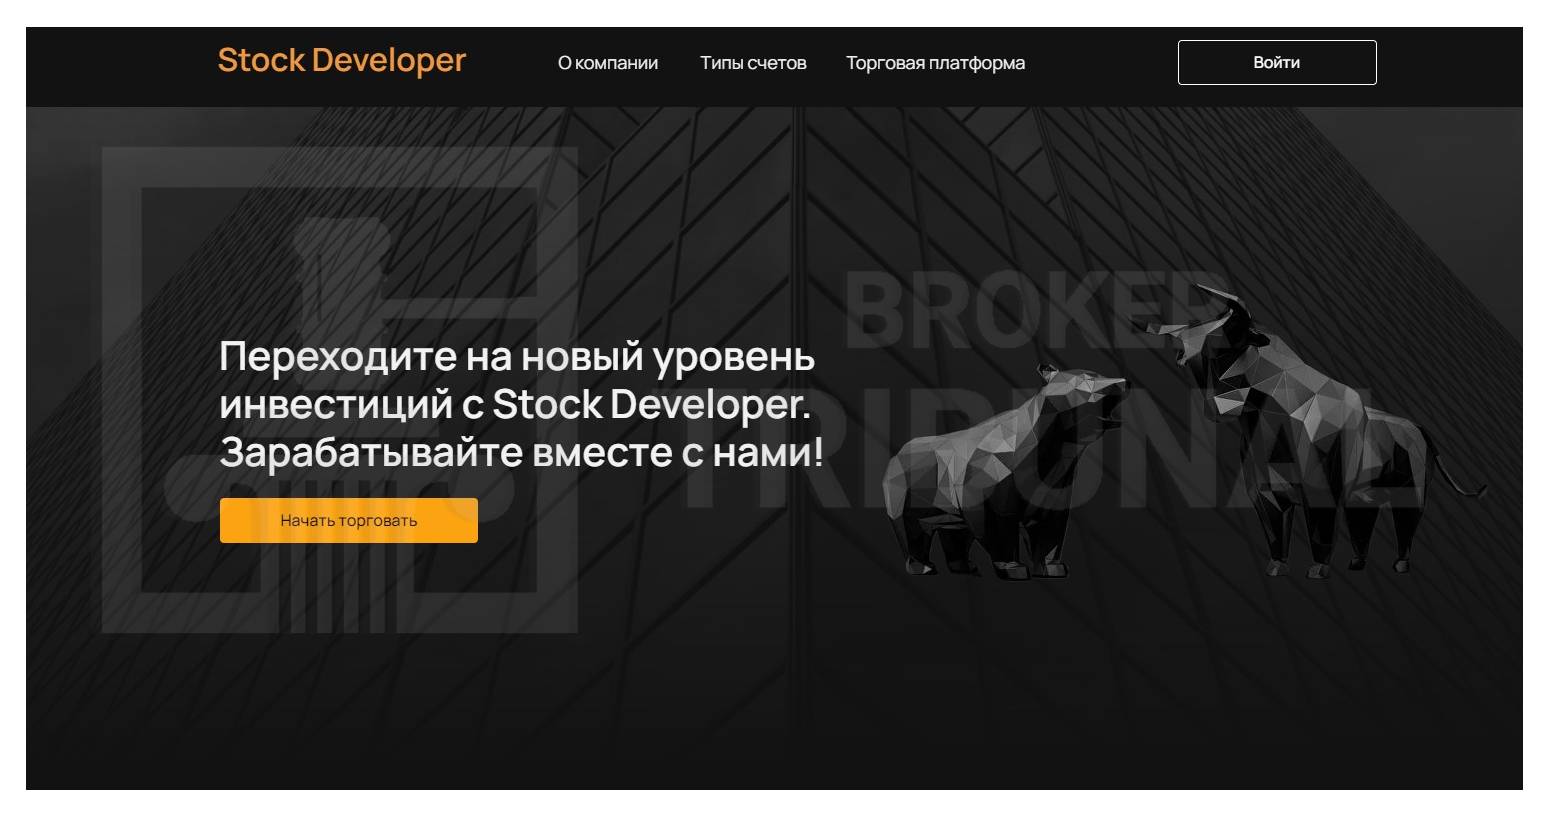 Stock Developer